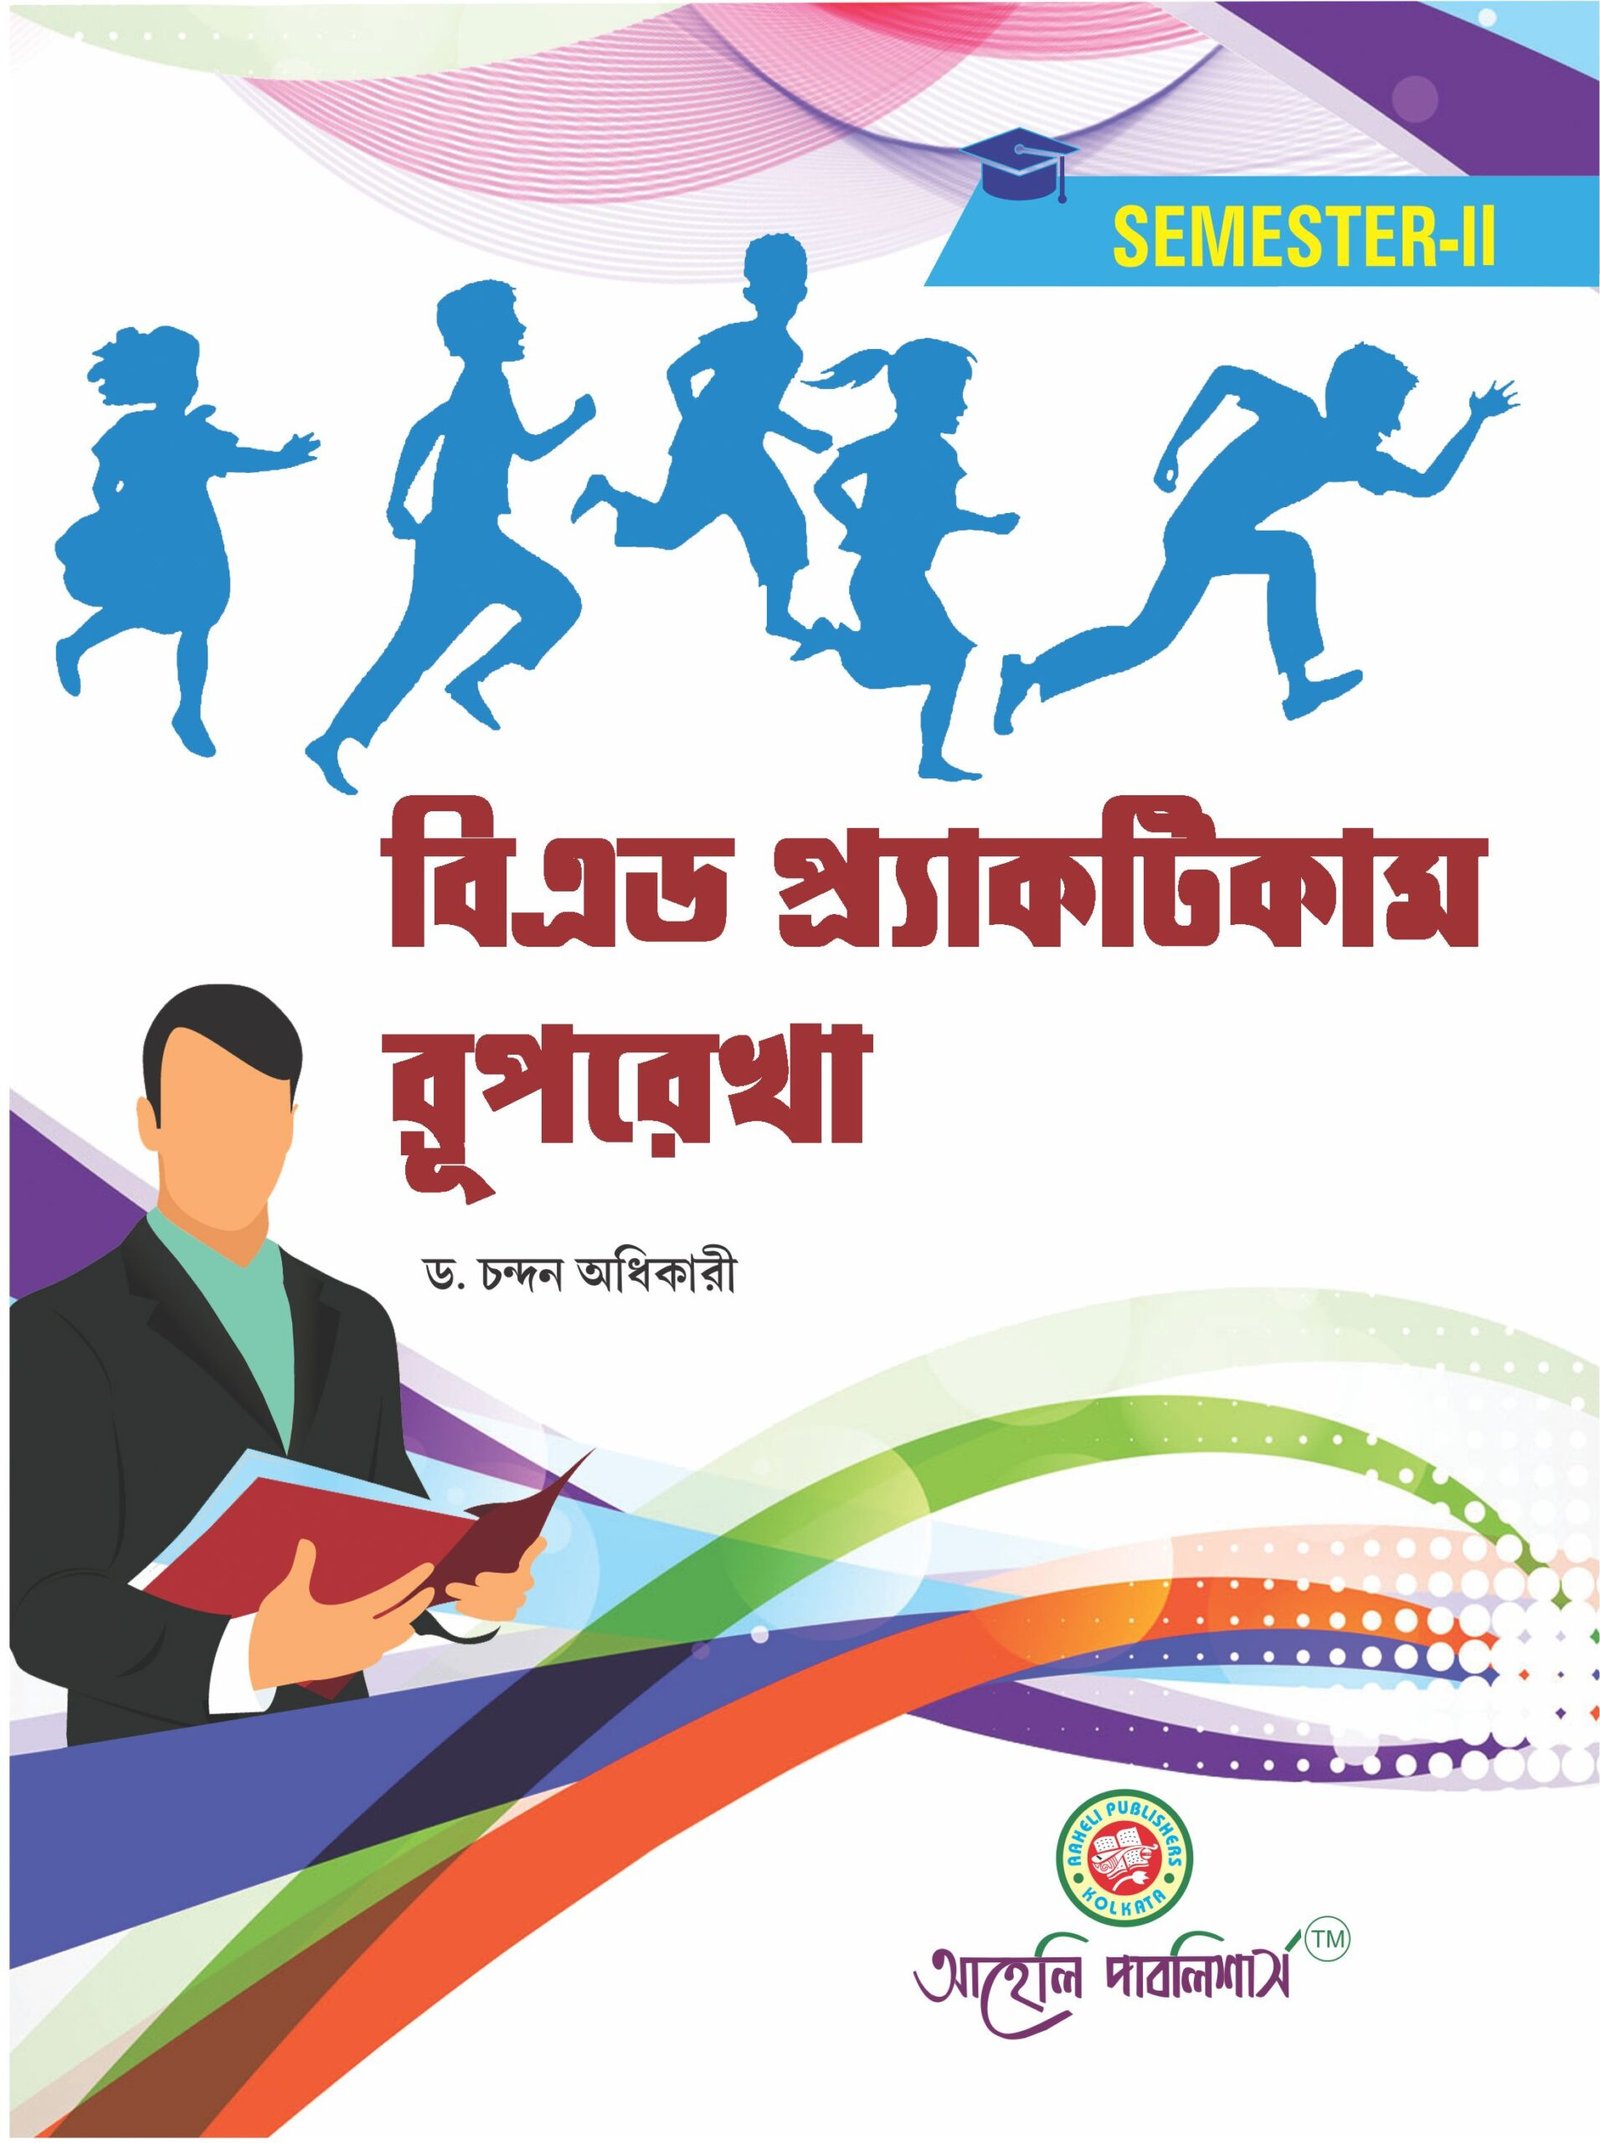 assignment submission b.ed practicum in bengali